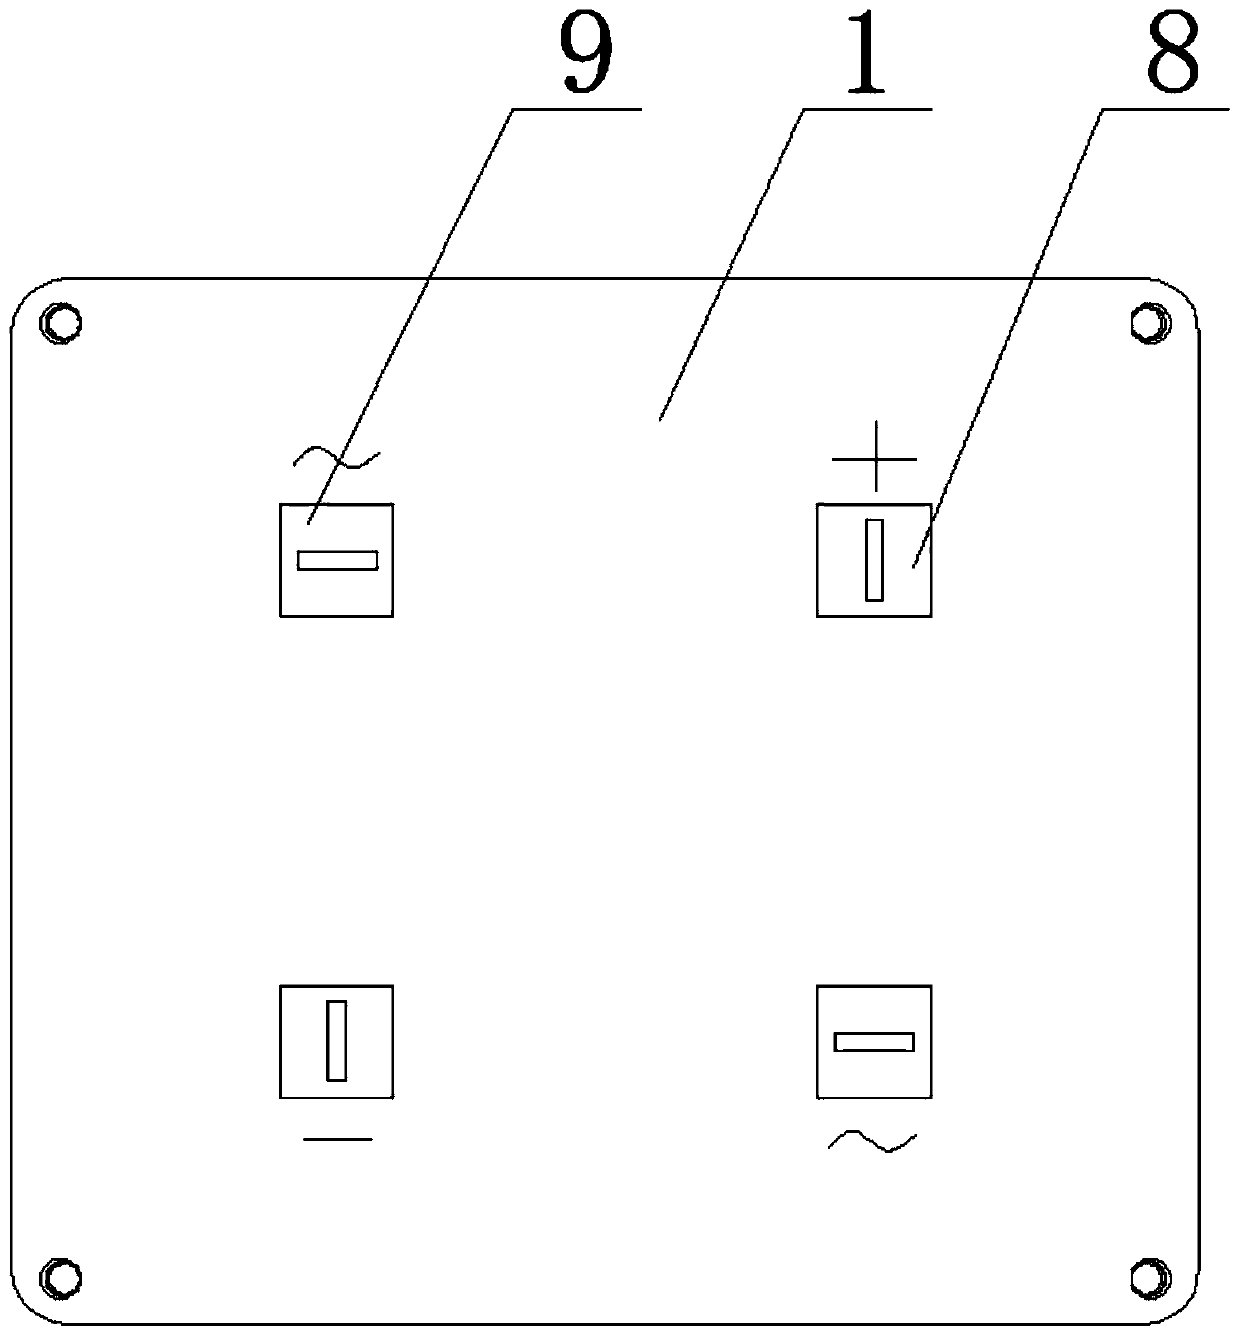 Axial array type rectifier bridge stack